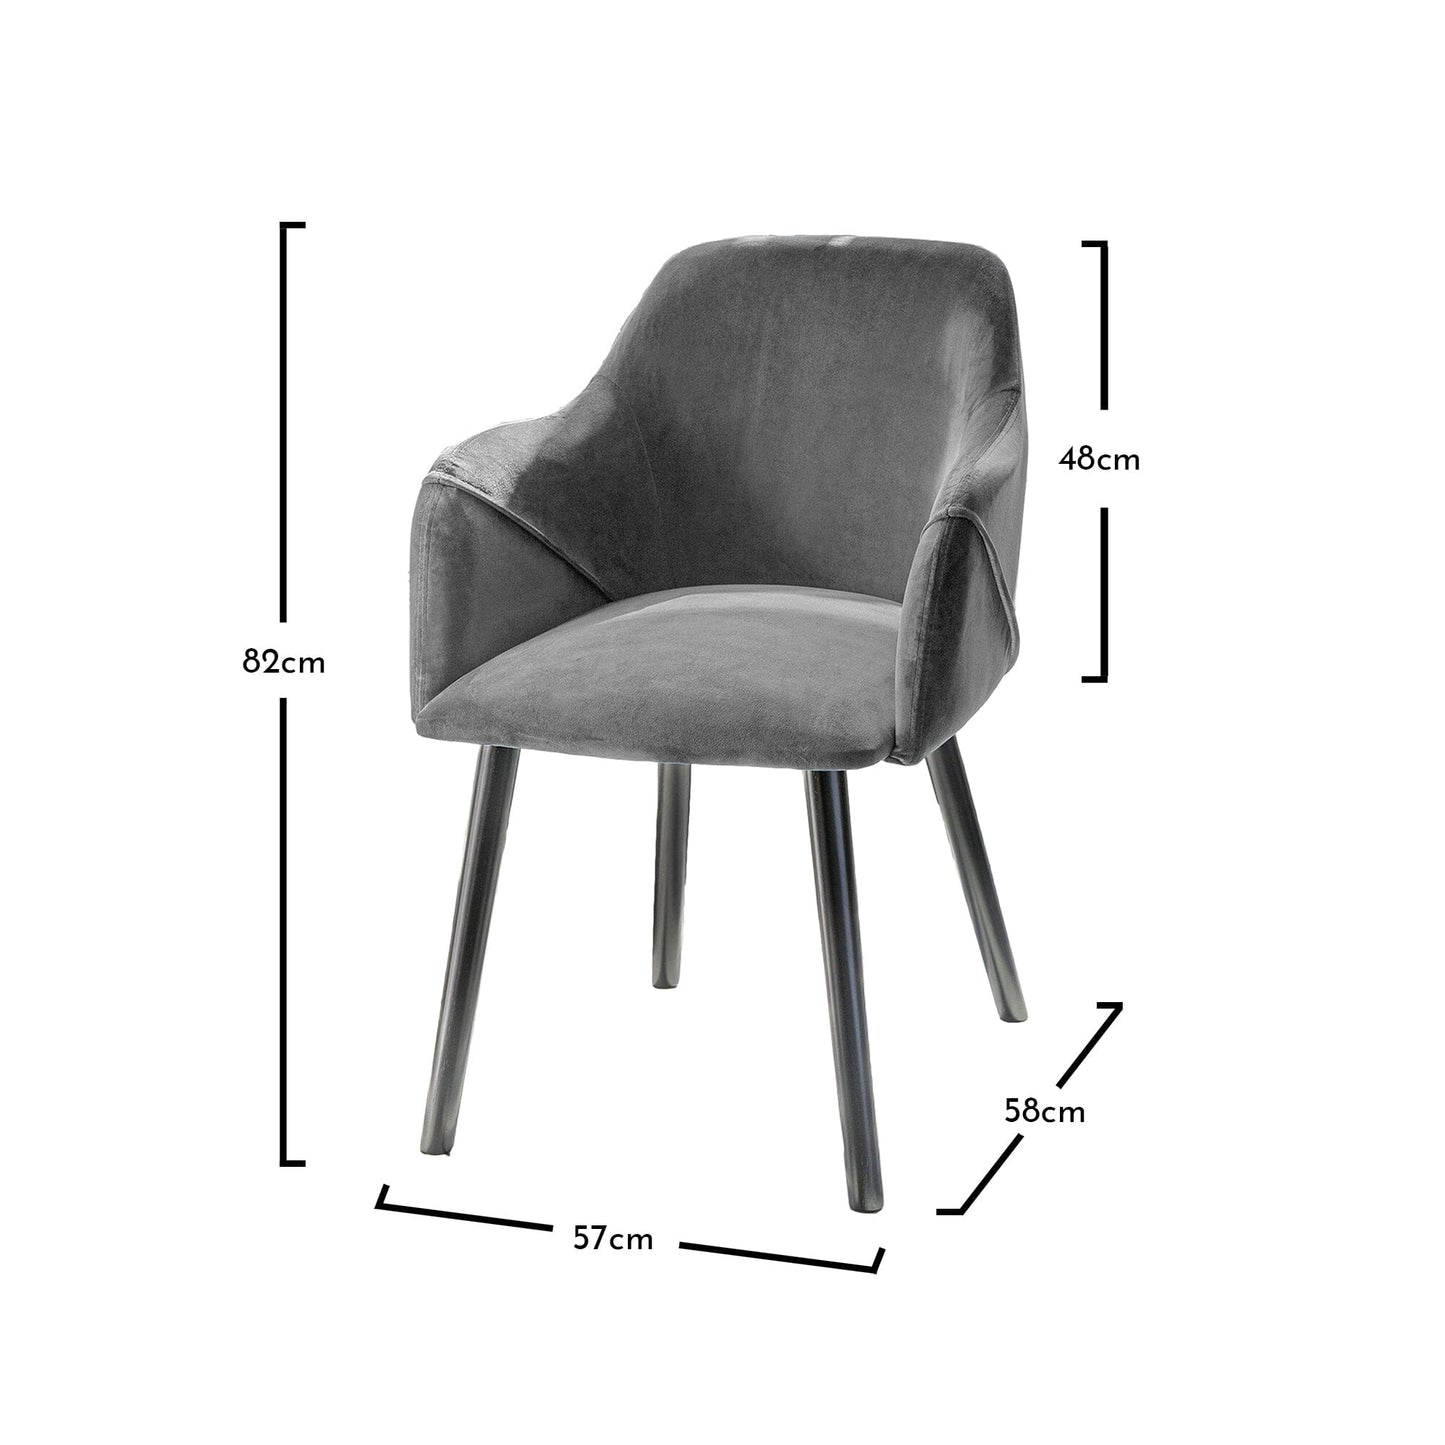 Freya armchairs - set of 2 - grey and black